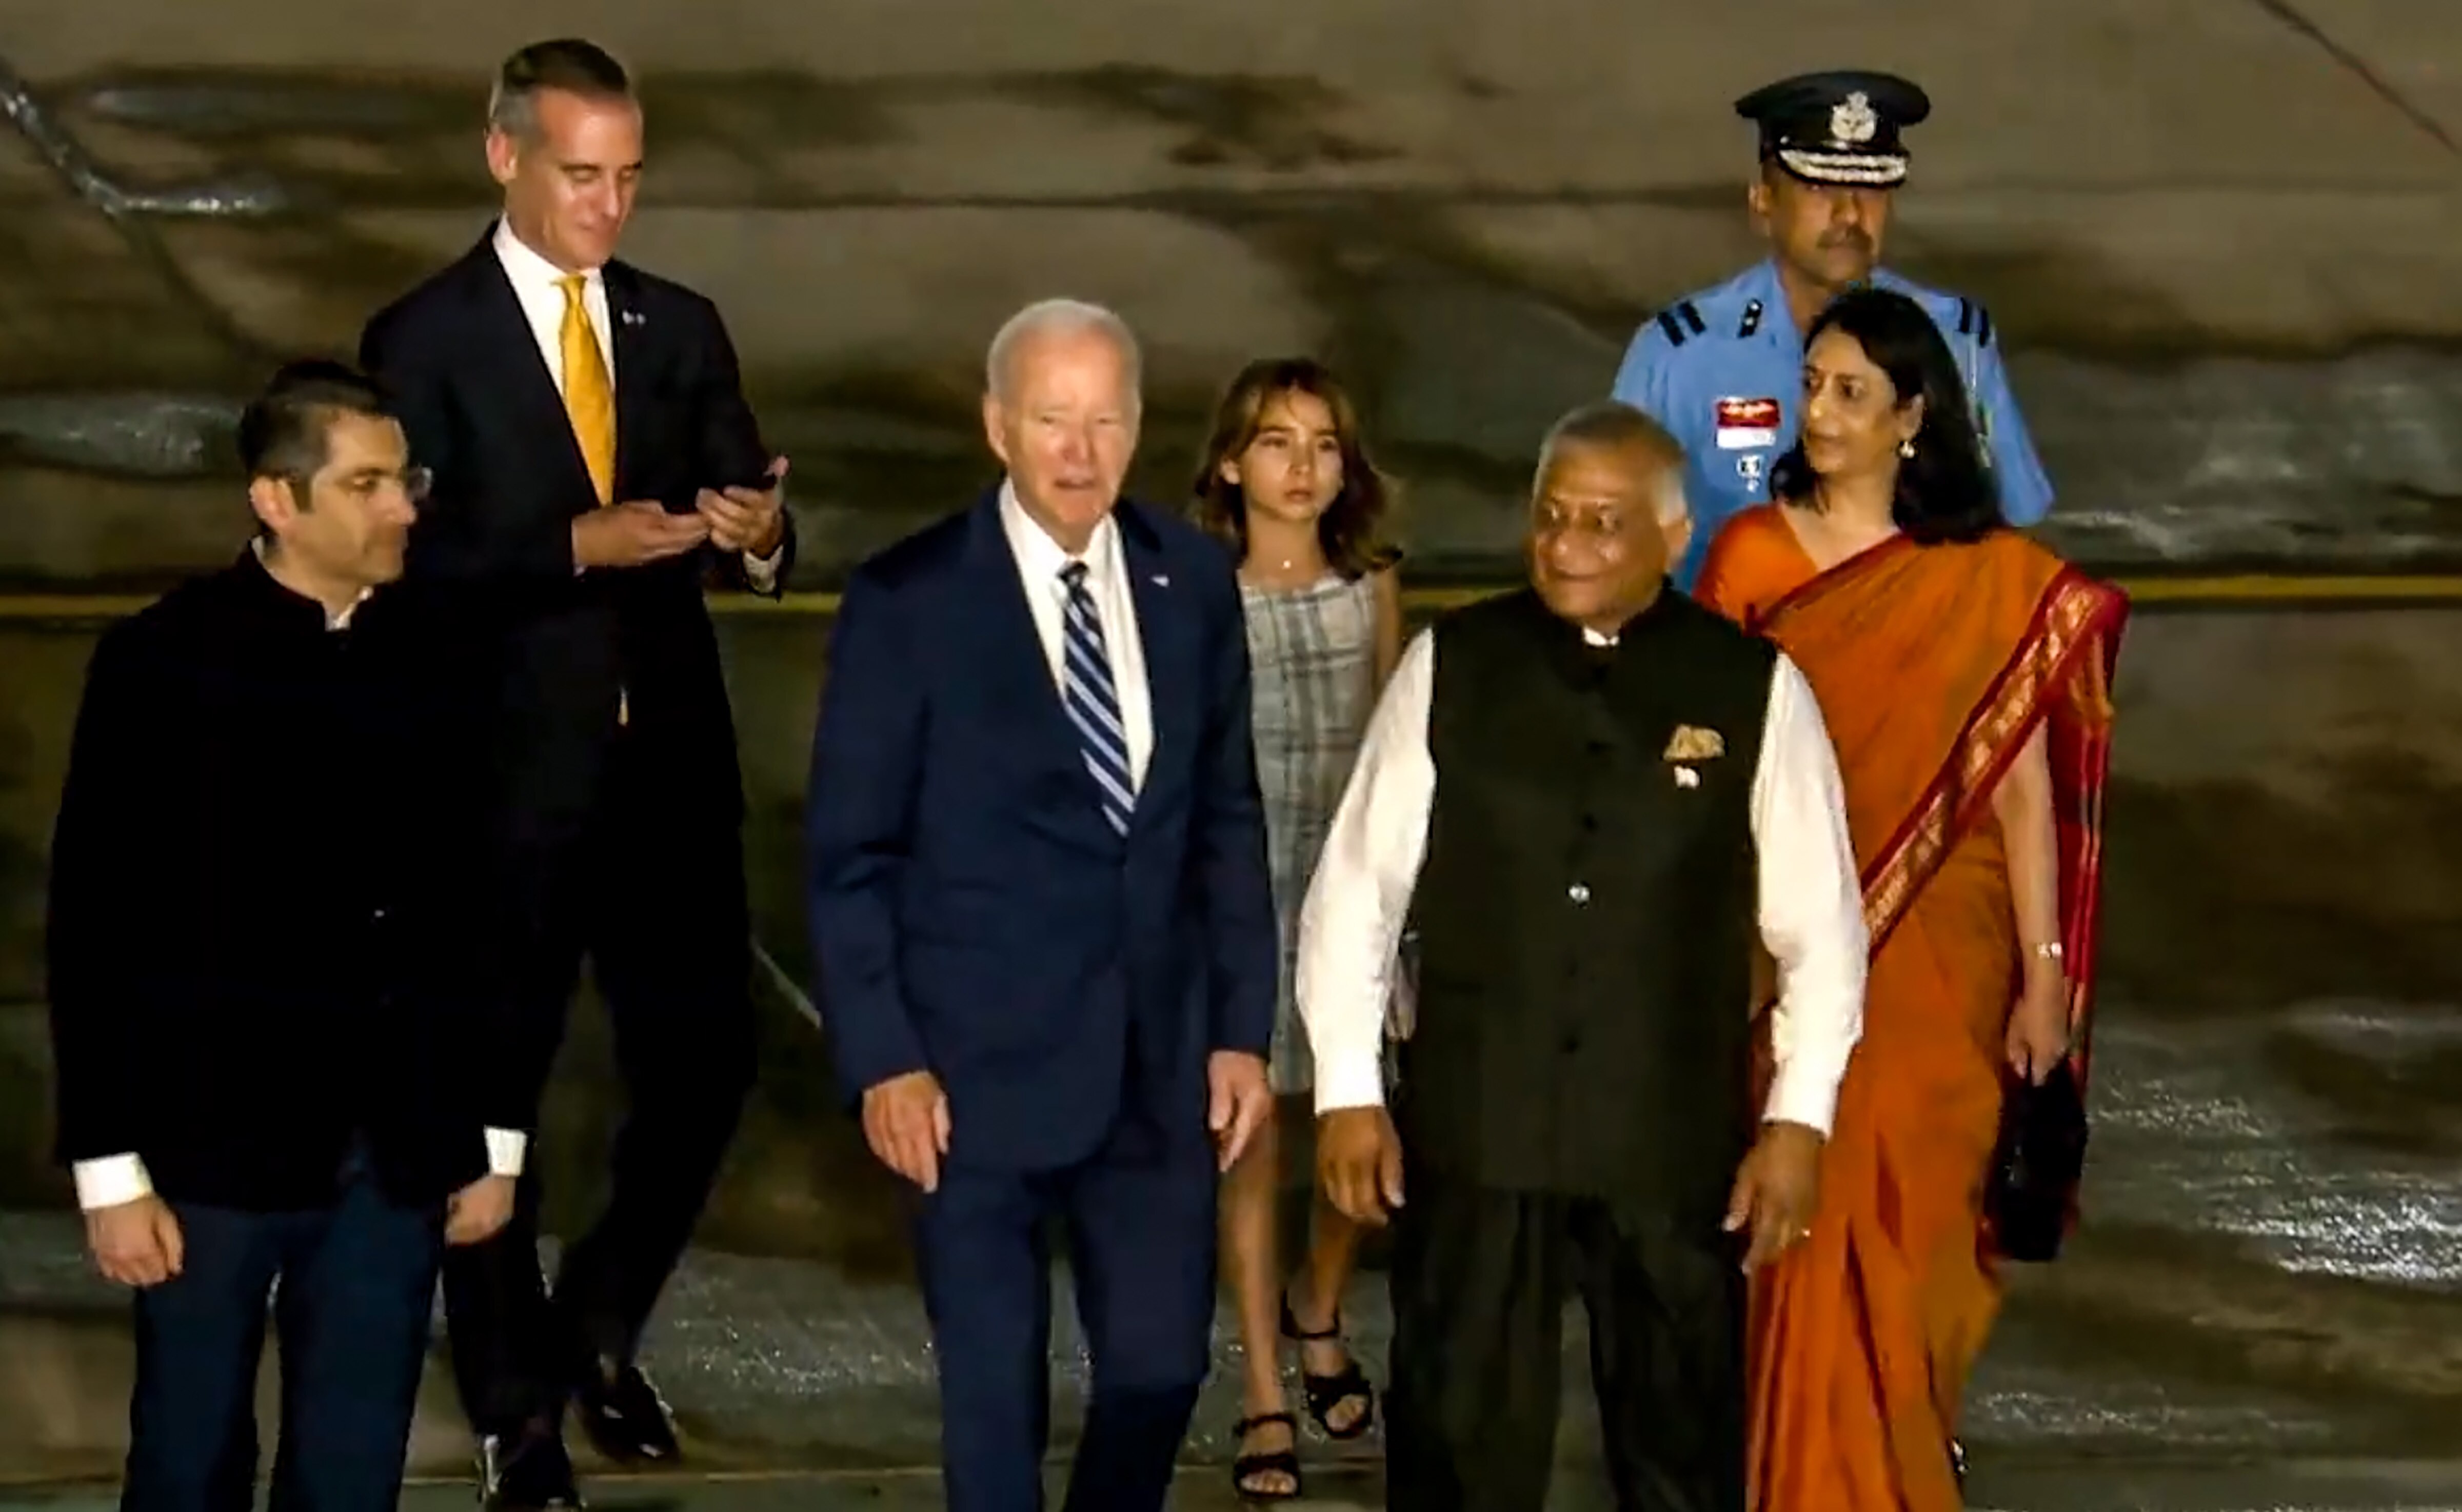 कोण आहे ती चिमुकली, जिच्याशी दिल्ली विमानतळावर गप्पा मारताना दिसले अमेरिकेचे राष्ट्रपती जो बायडन?